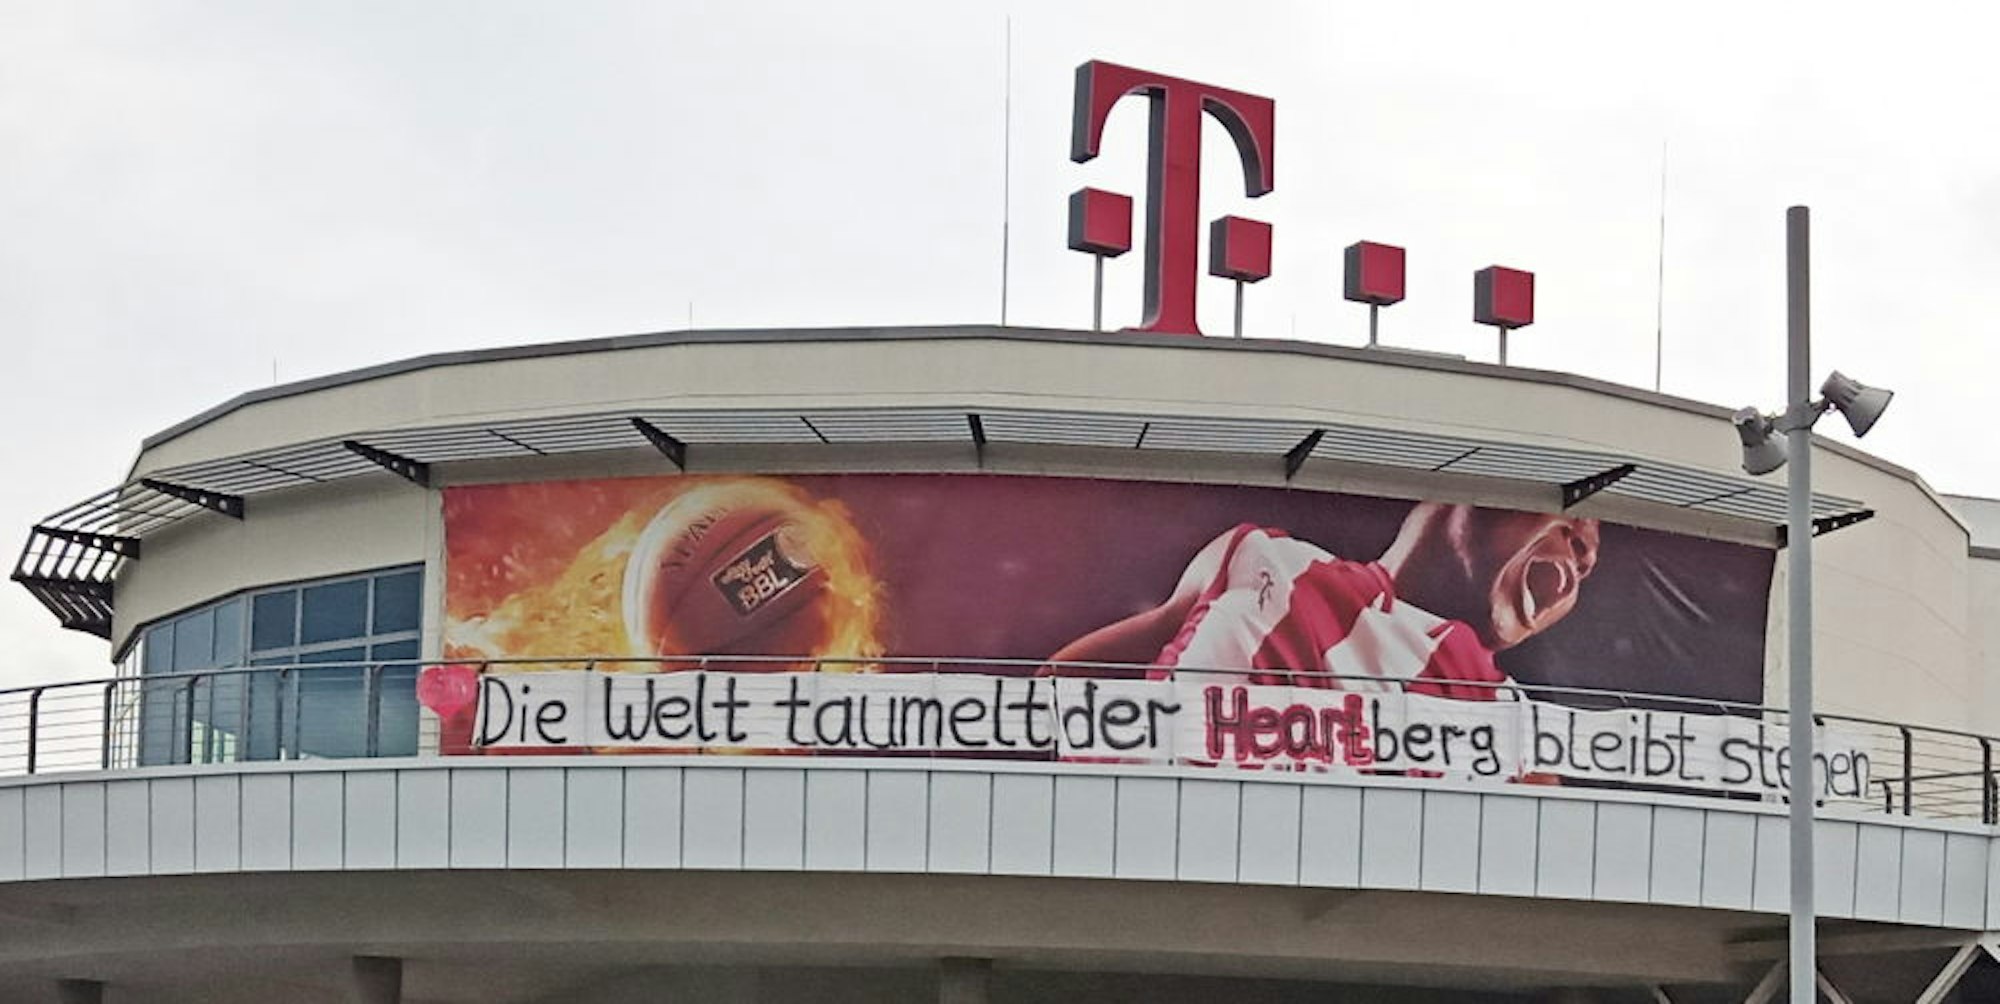 Ein Banner des Baskets-Fanclubs am Telekom Dome soll Optimismus verbreiten: „Die Welt taumelt, der Heartberg bleibt stehen.“